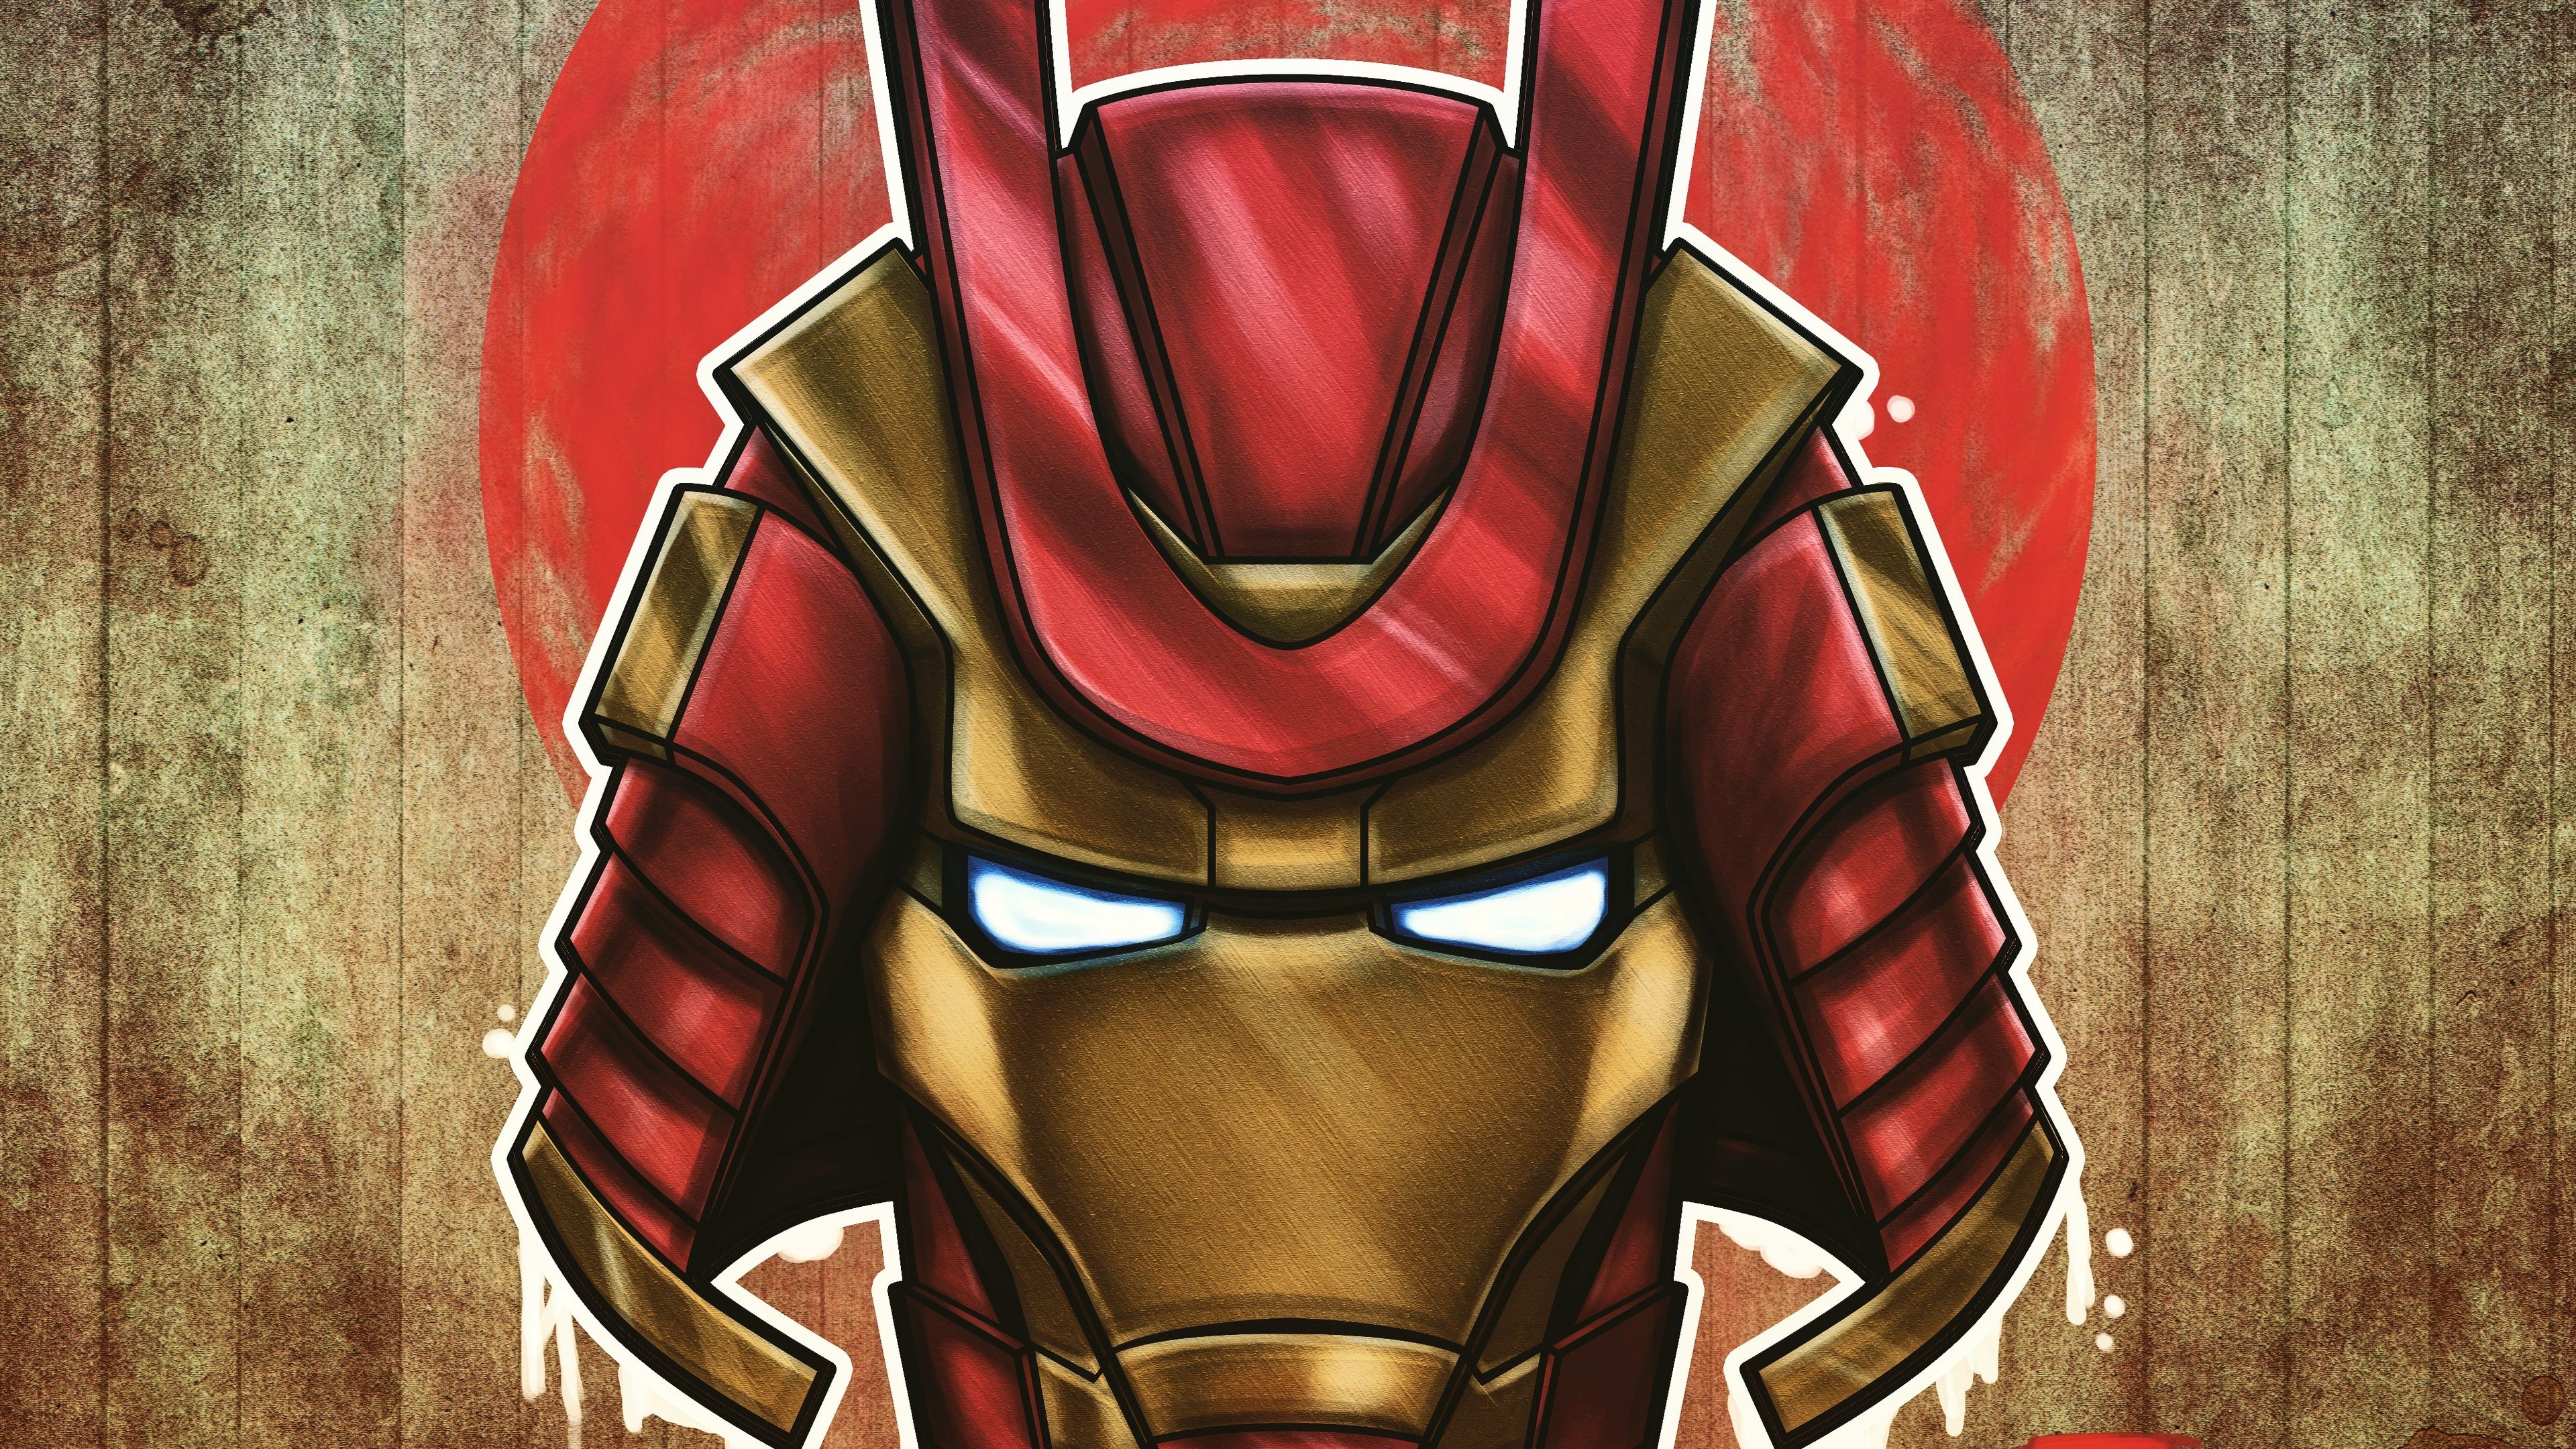 Marvel Samurai Iron Man. Iron man wallpaper, Iron man, Samurai wallpaper